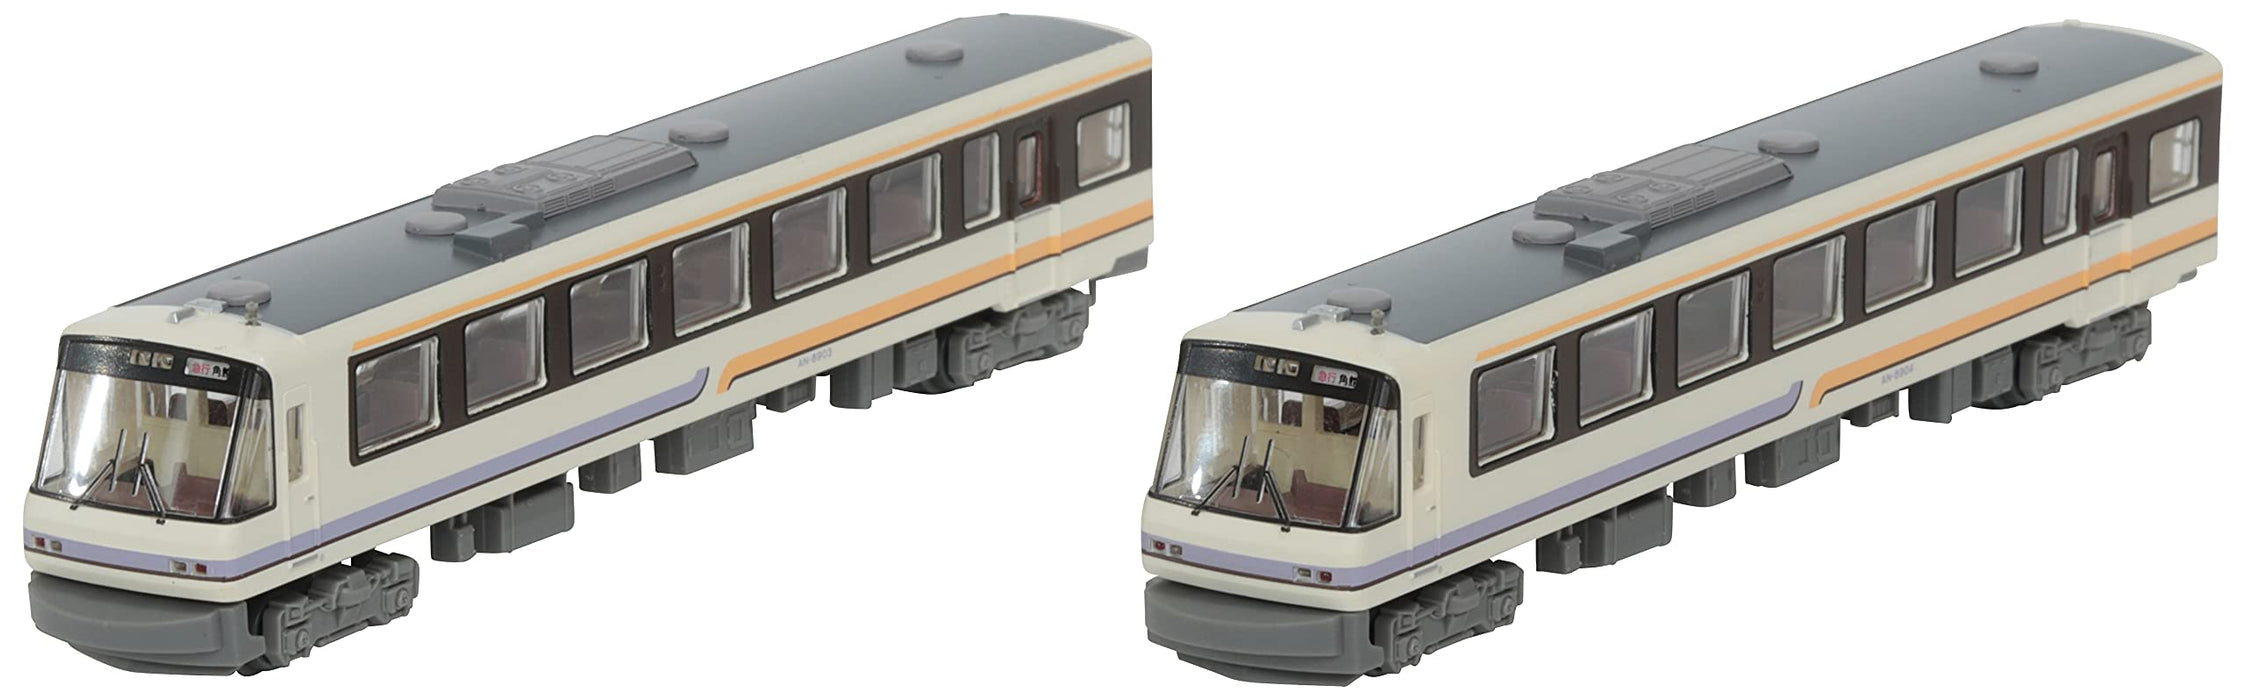 Tomytec Akita Nairiku Jukan Railway An8900 2-Car Set Original Color Diorama Supplies